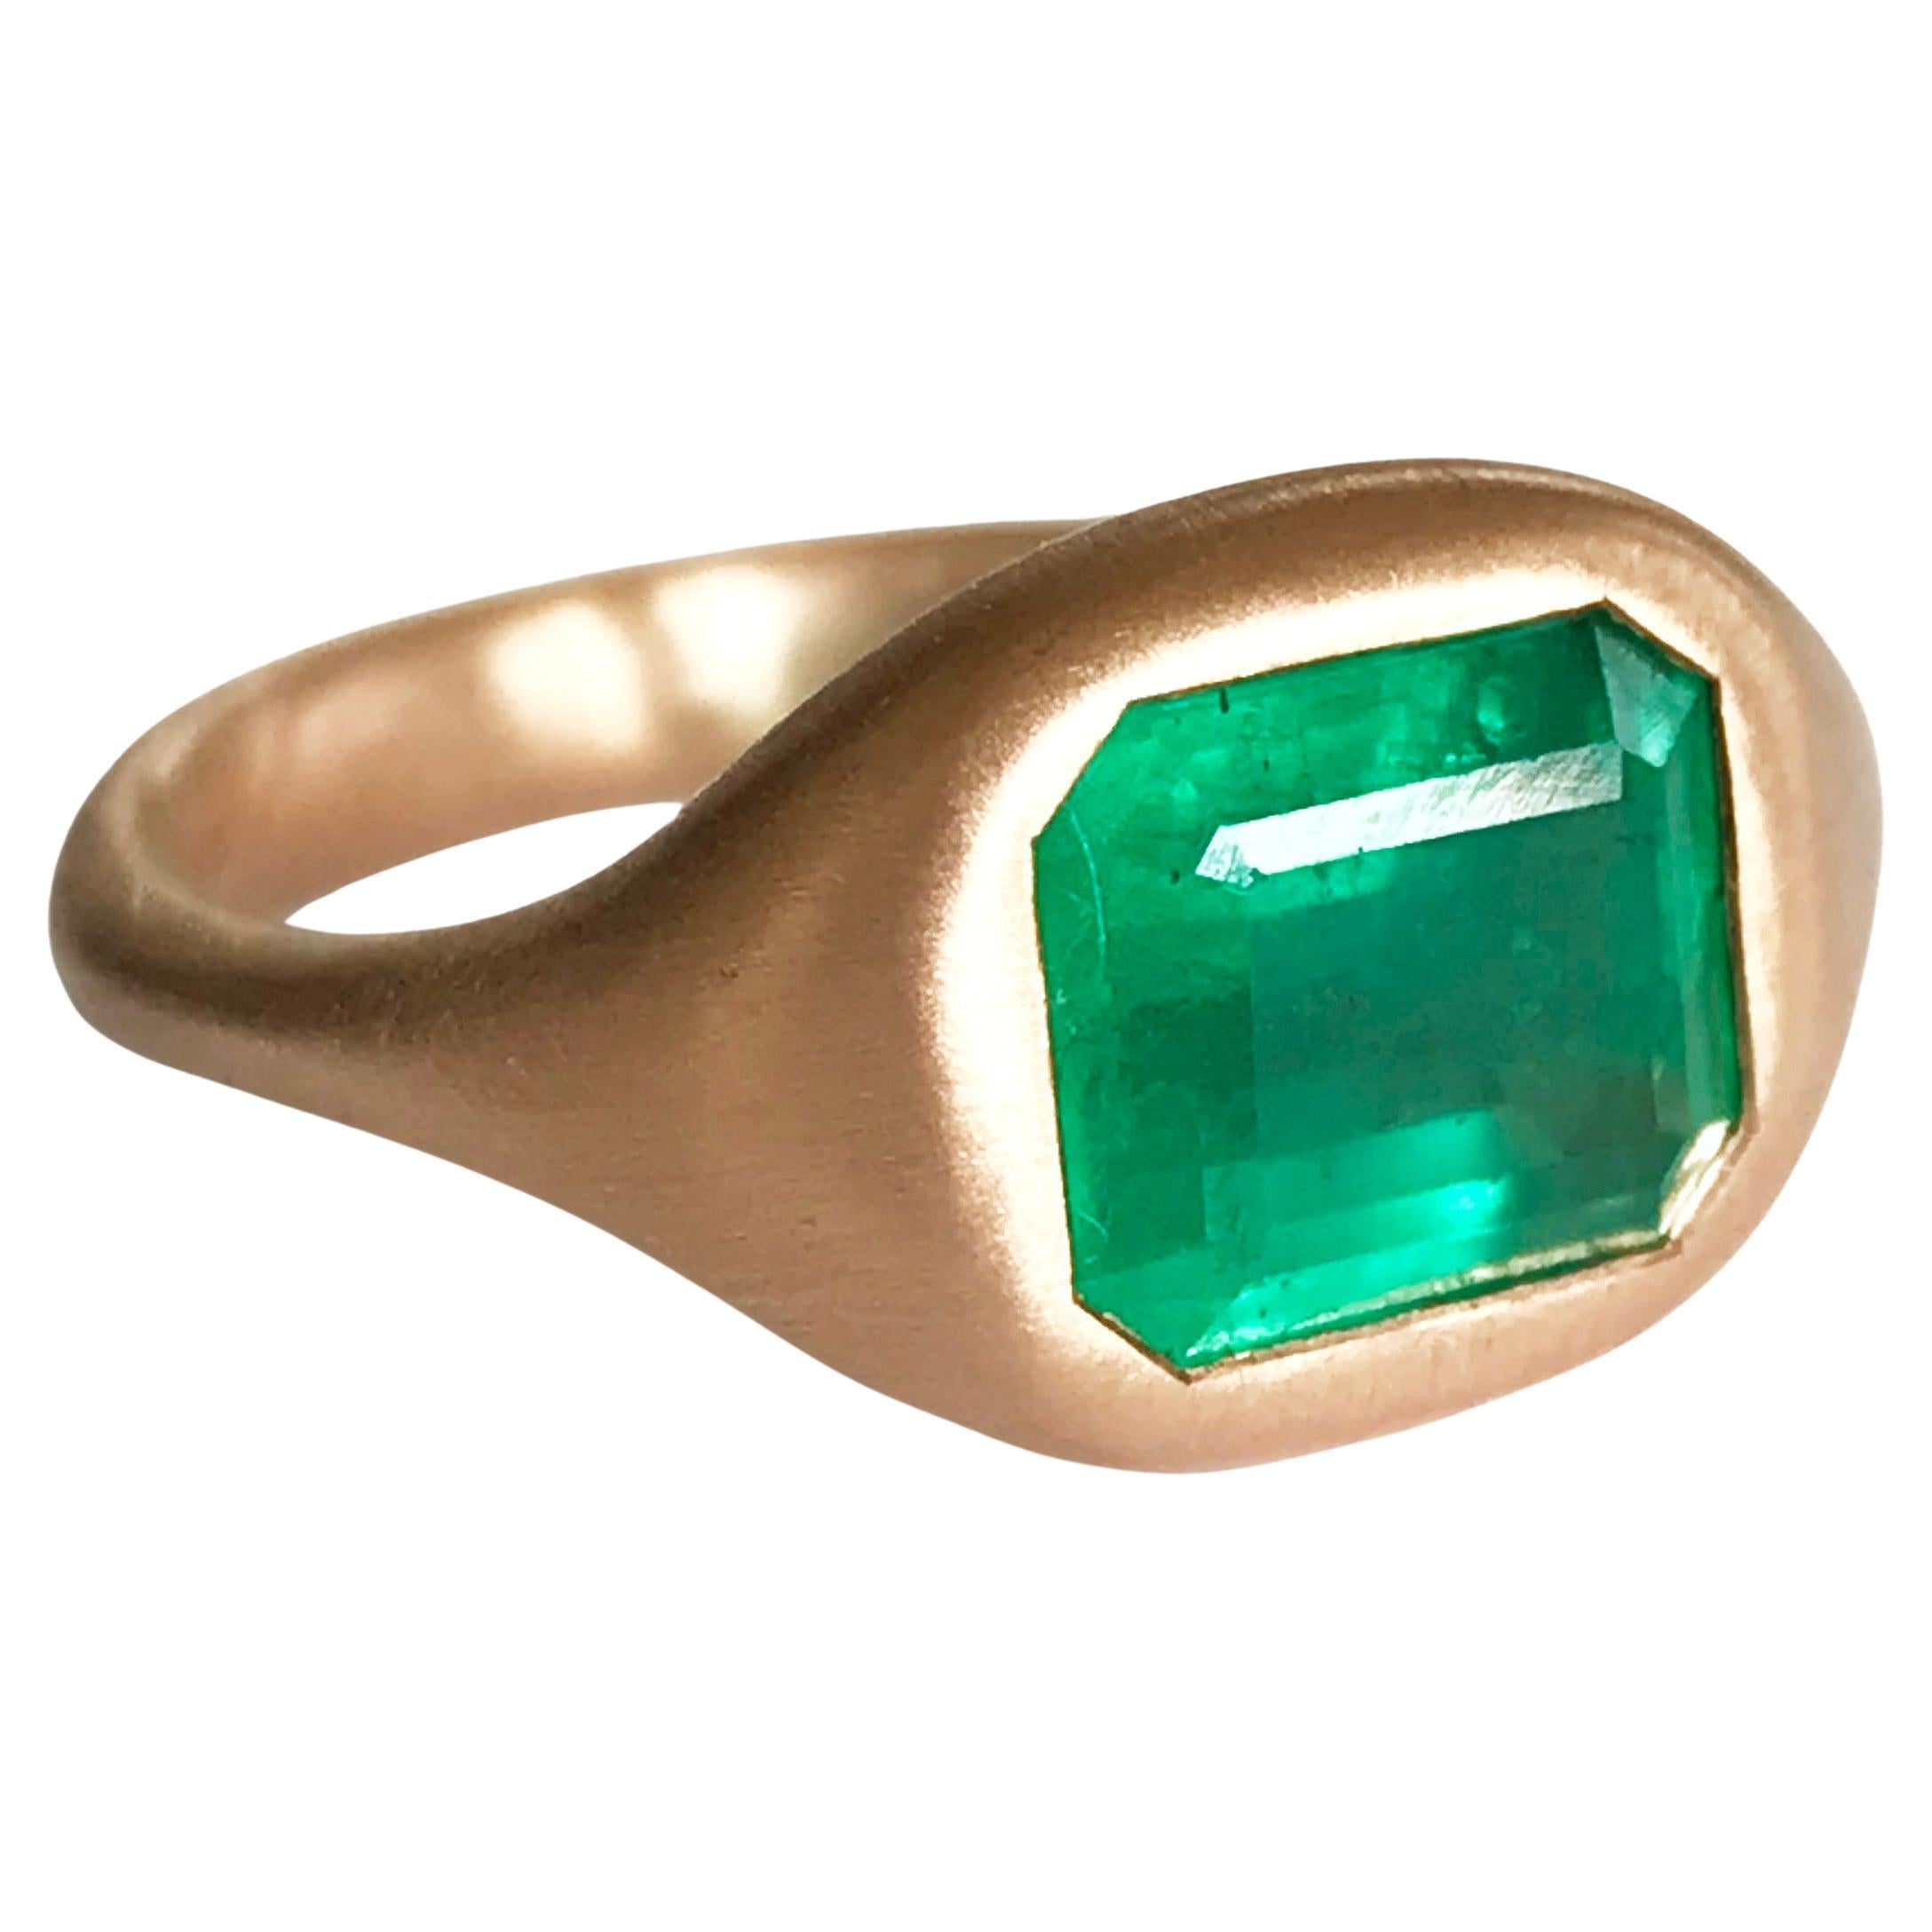 Dalben 2, 8 Carat Emerald Rose Gold Ring